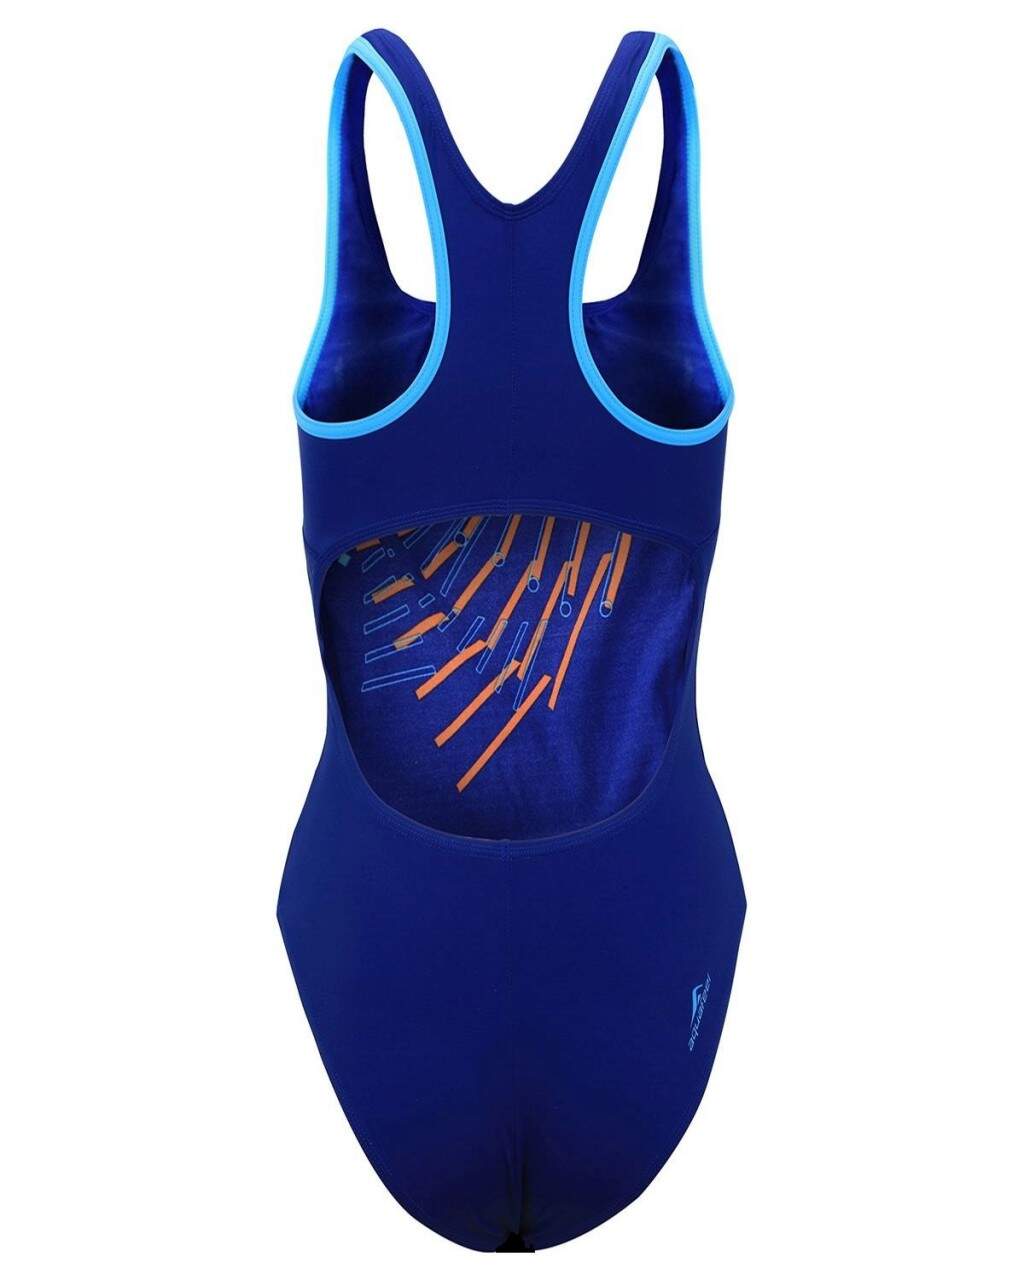 Damen Schwimmanzug 36 Aquafeel Fashy 2001 00 Nr.13 Badeanzug Blau Orange Gr 